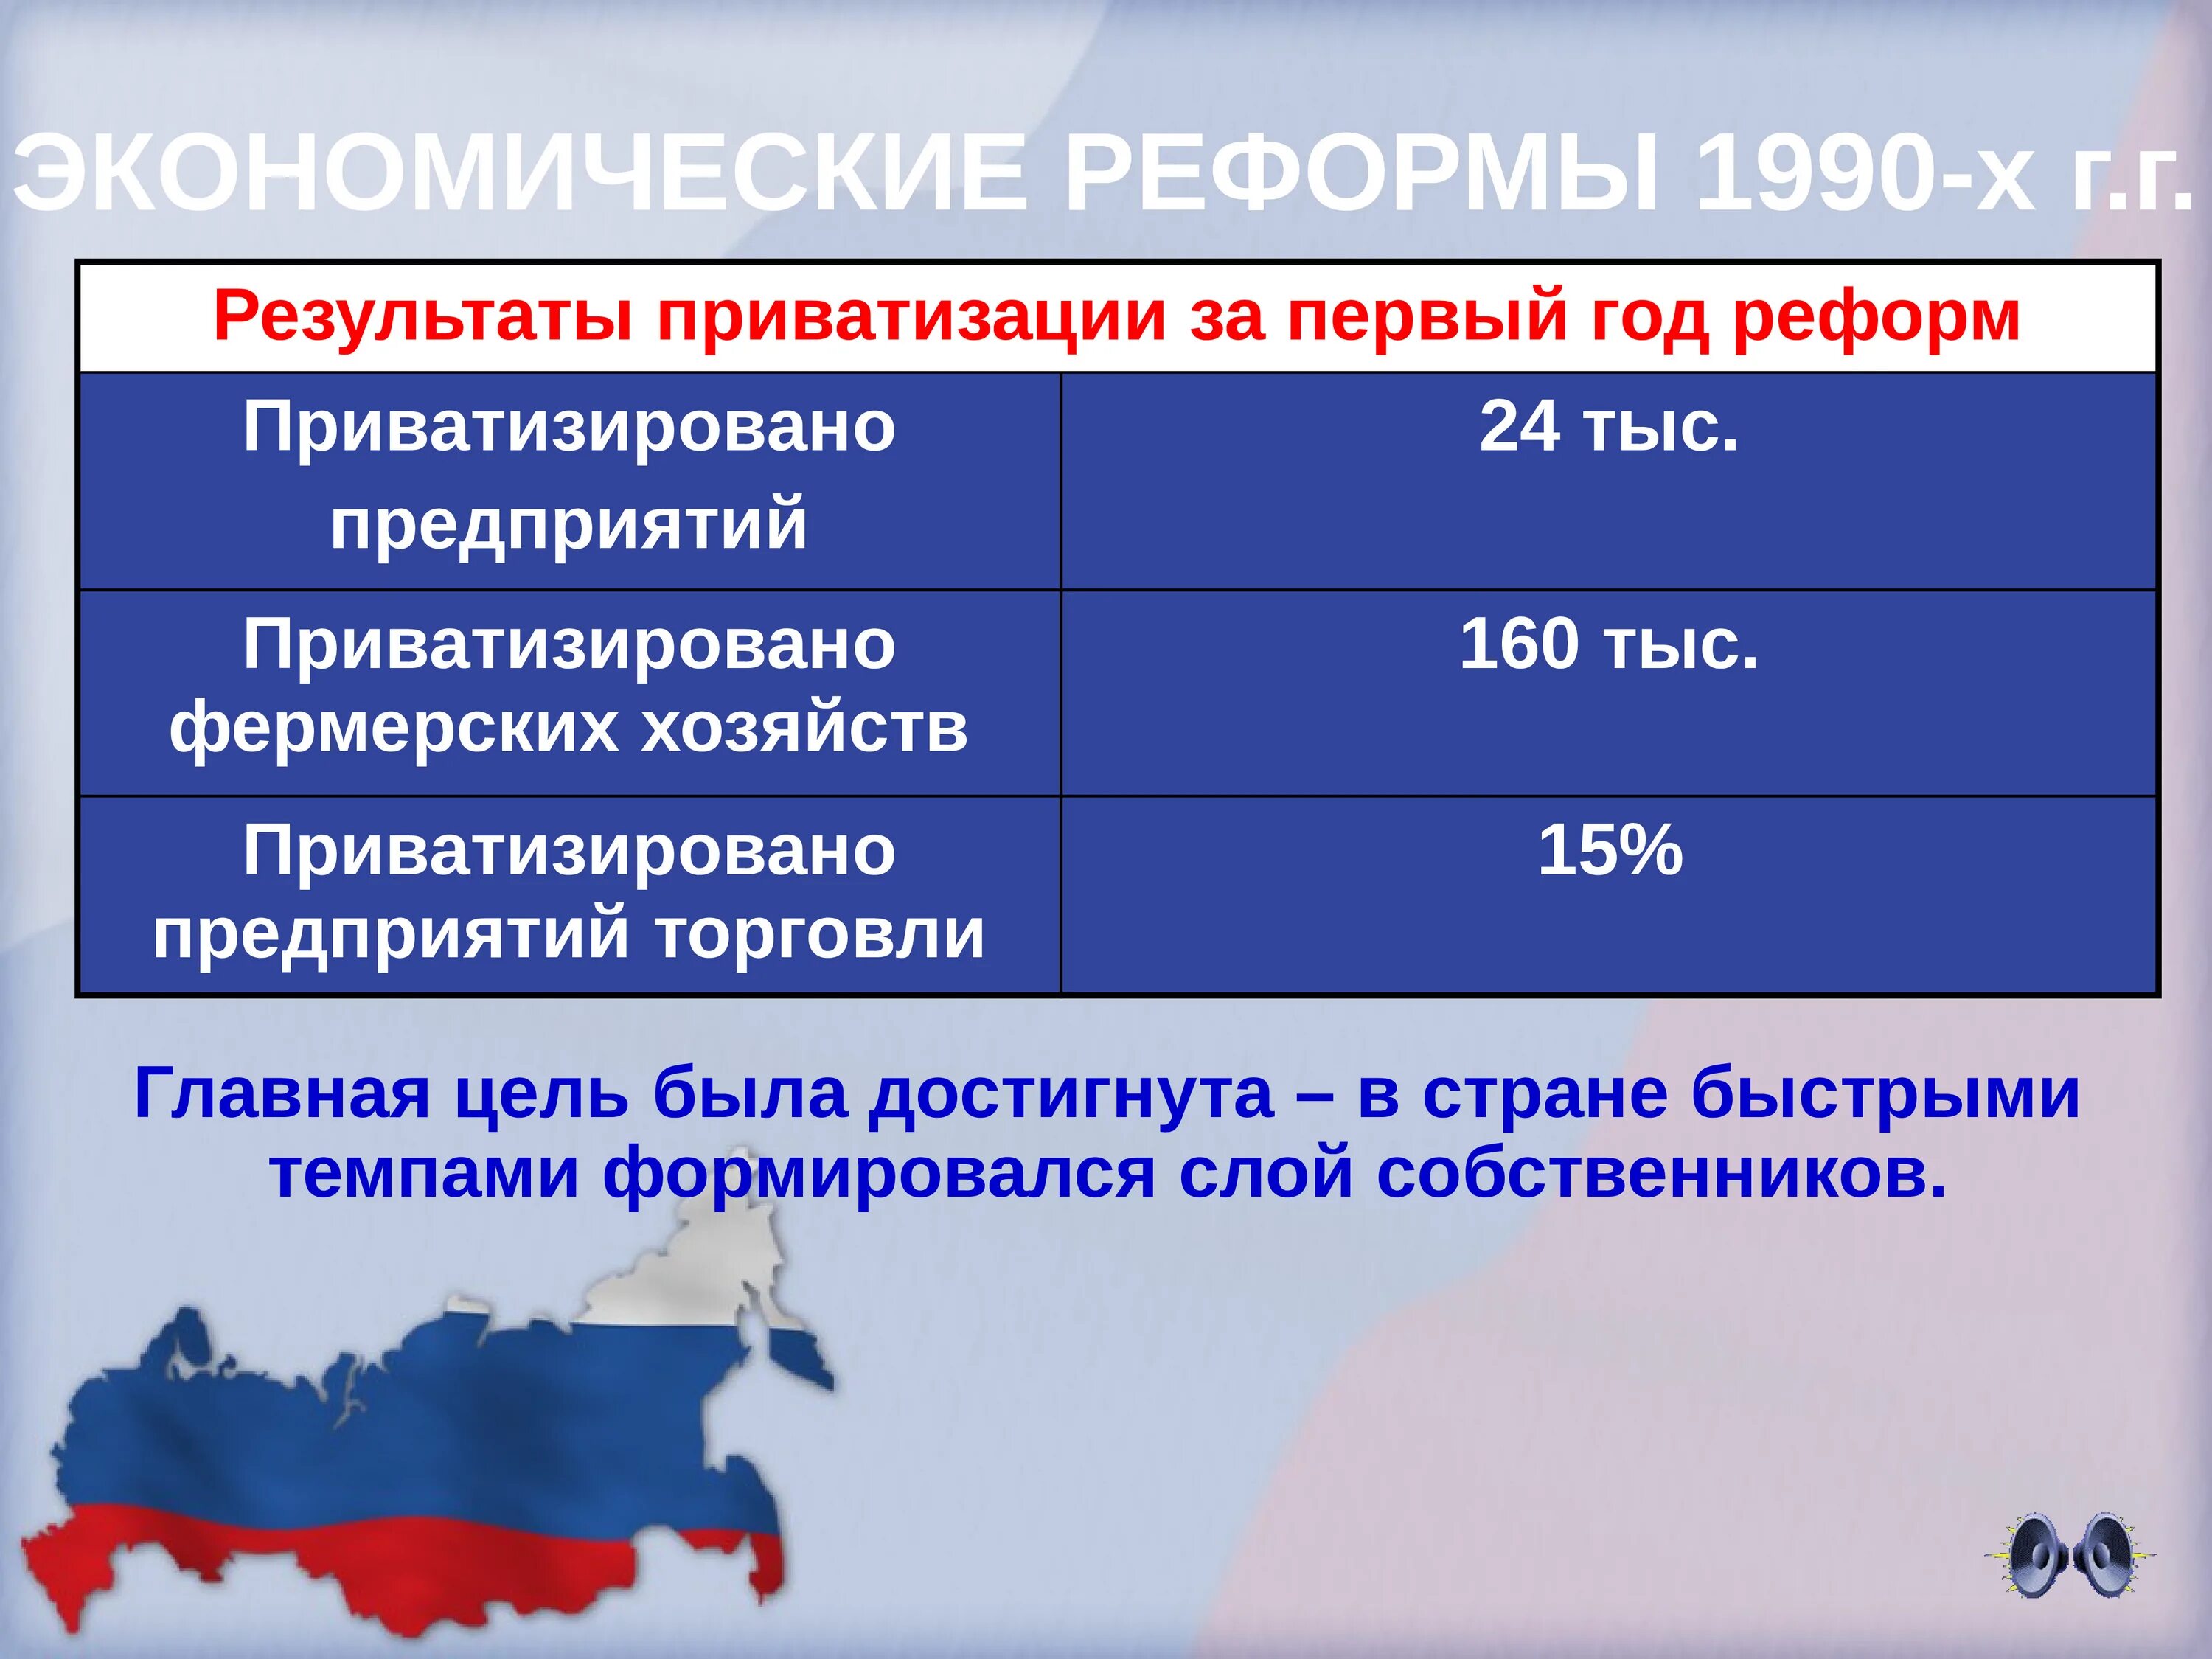 Экономические реформы 1990-х гг.. Экономические преобразования 1990-х годов.. Результаты экономических реформ 1990-х годов в России. Экономическая реформа в России в 1990-х. Результаты экономических реформ 1990 х